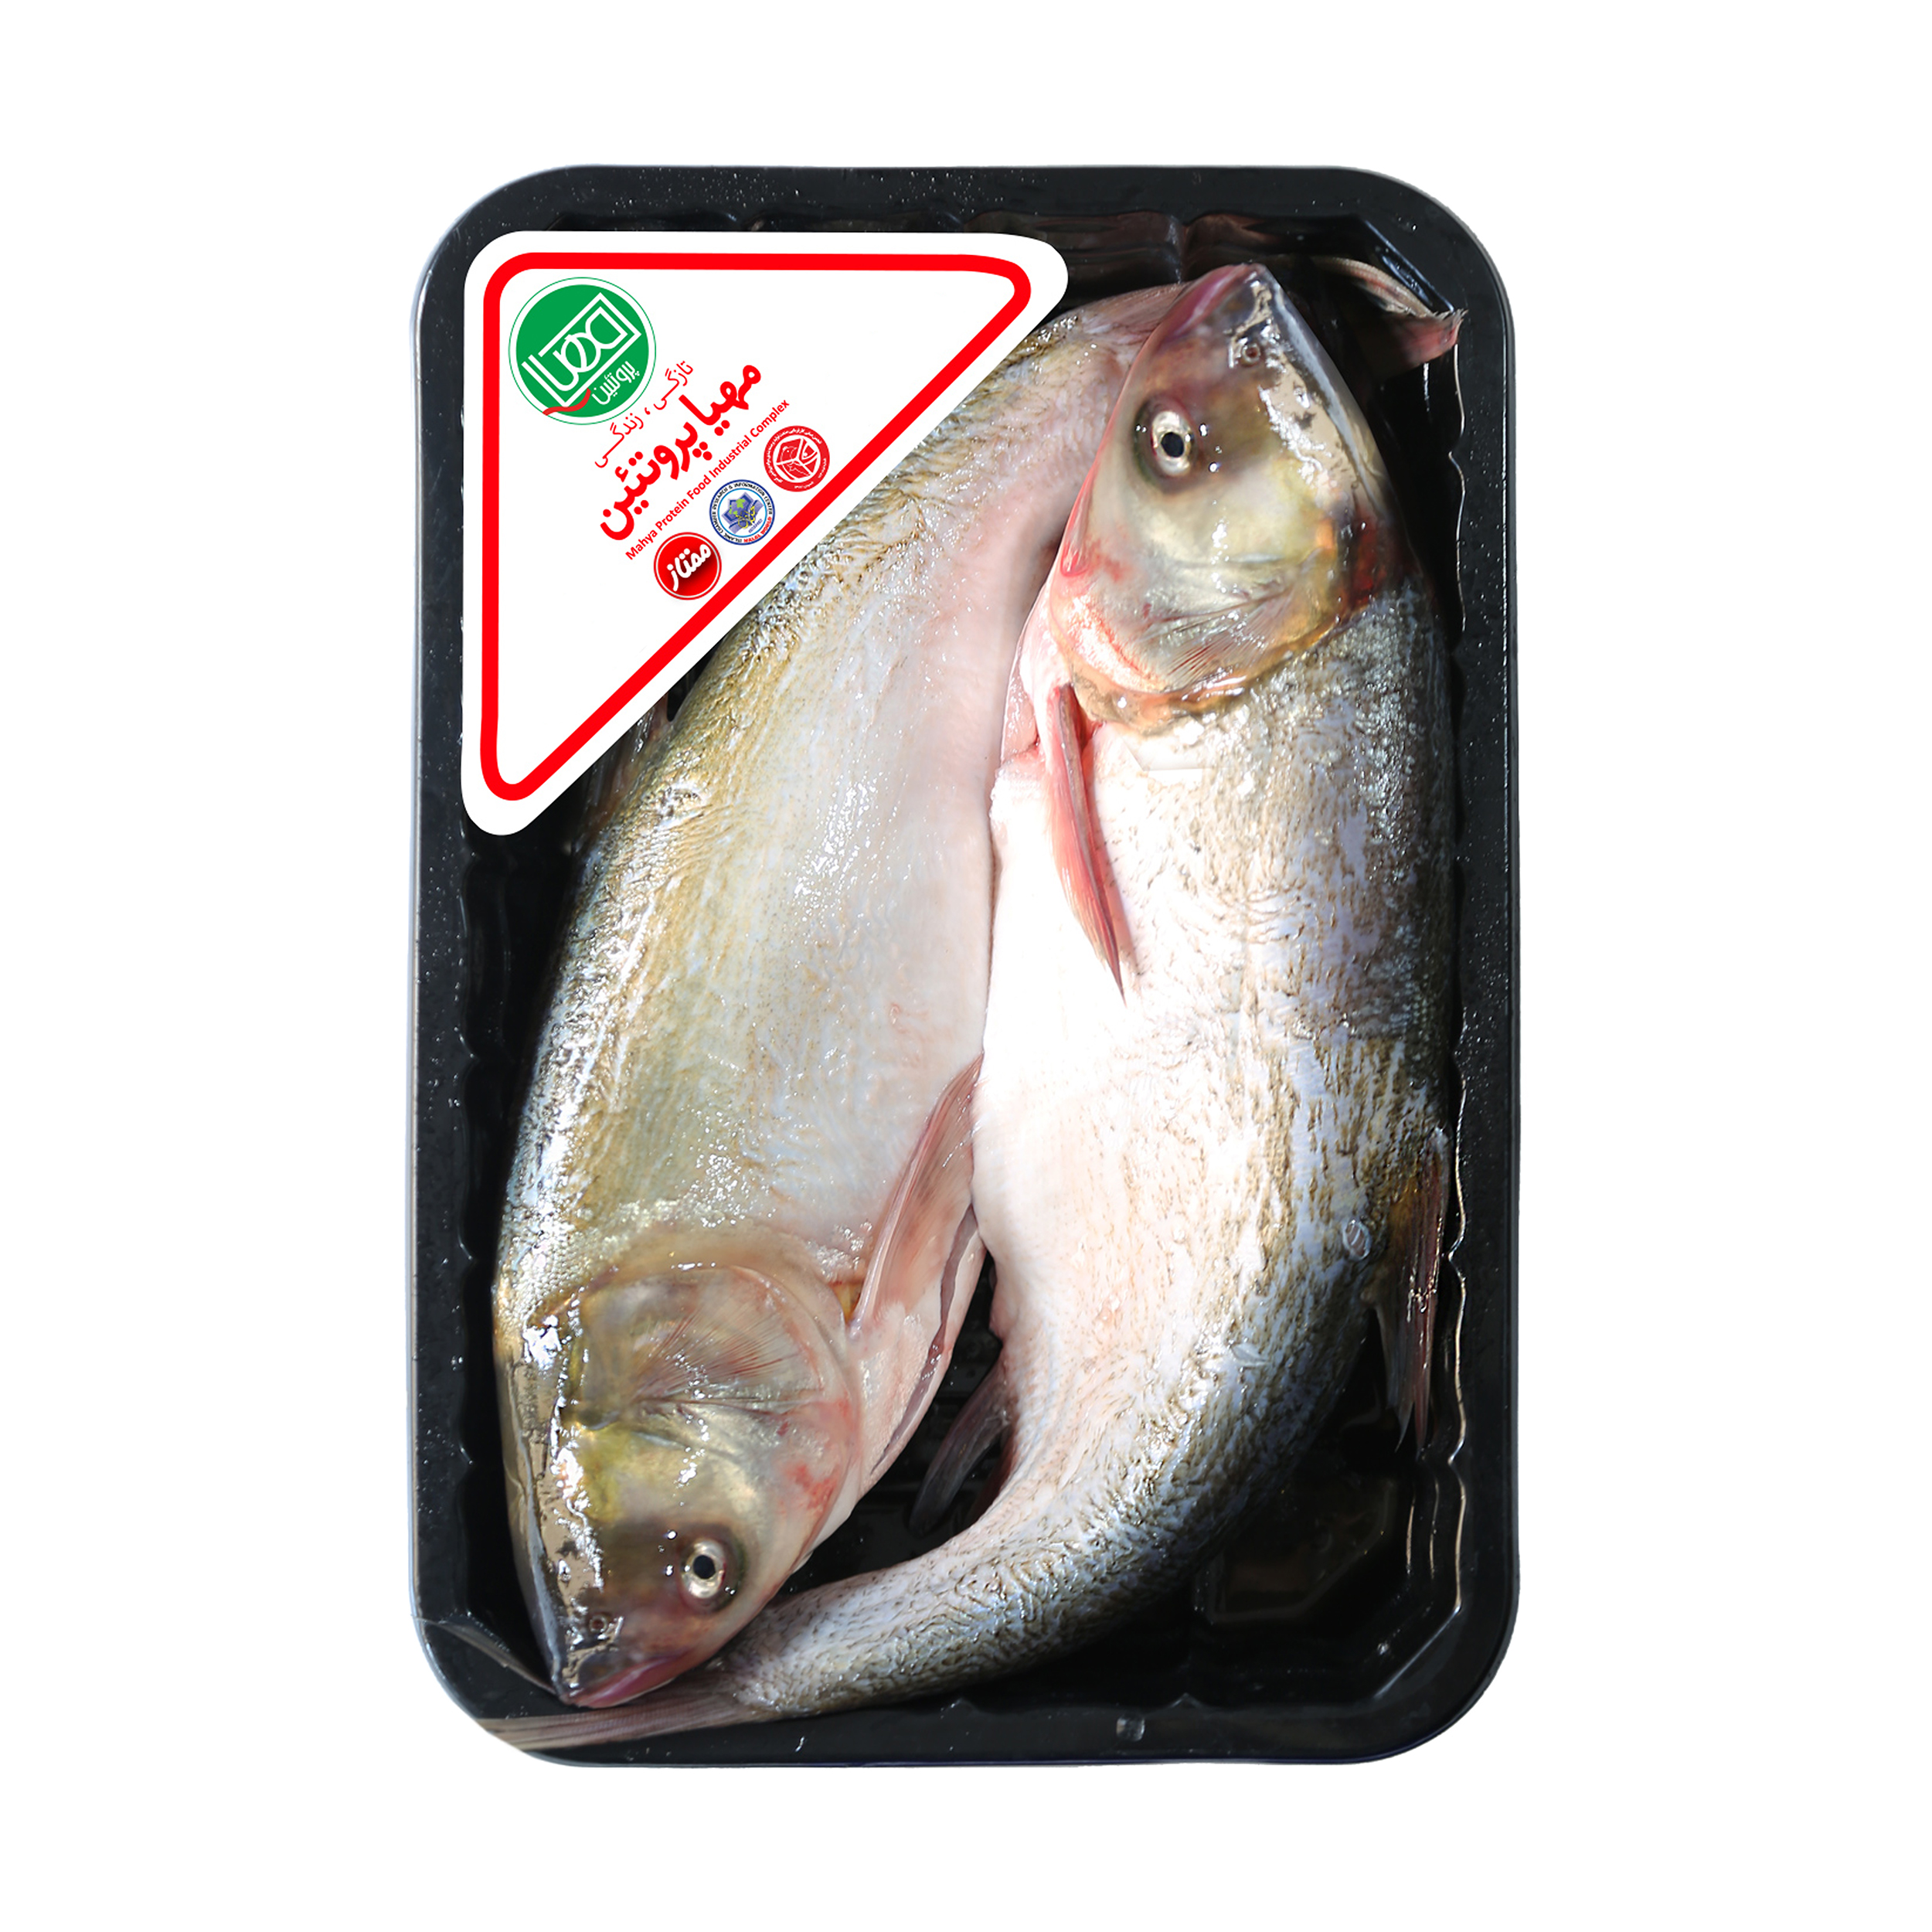 ماهي آزاد شکم خالي تازه مهيا پروتئين - 1.8 کيلوگرم	